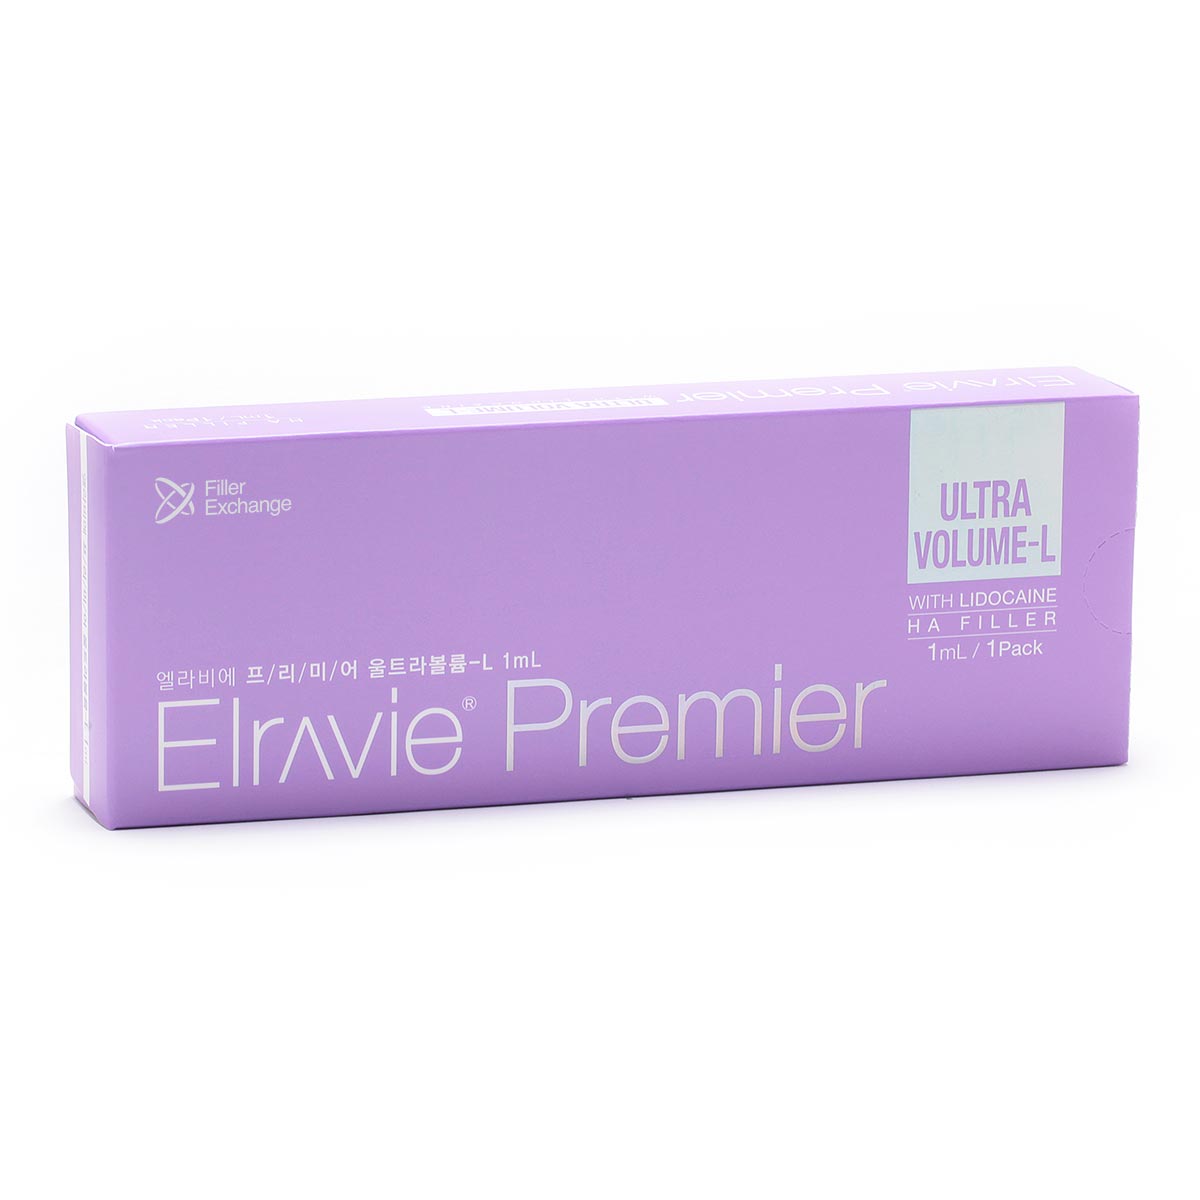 Elravie Premier Ultra Volume L